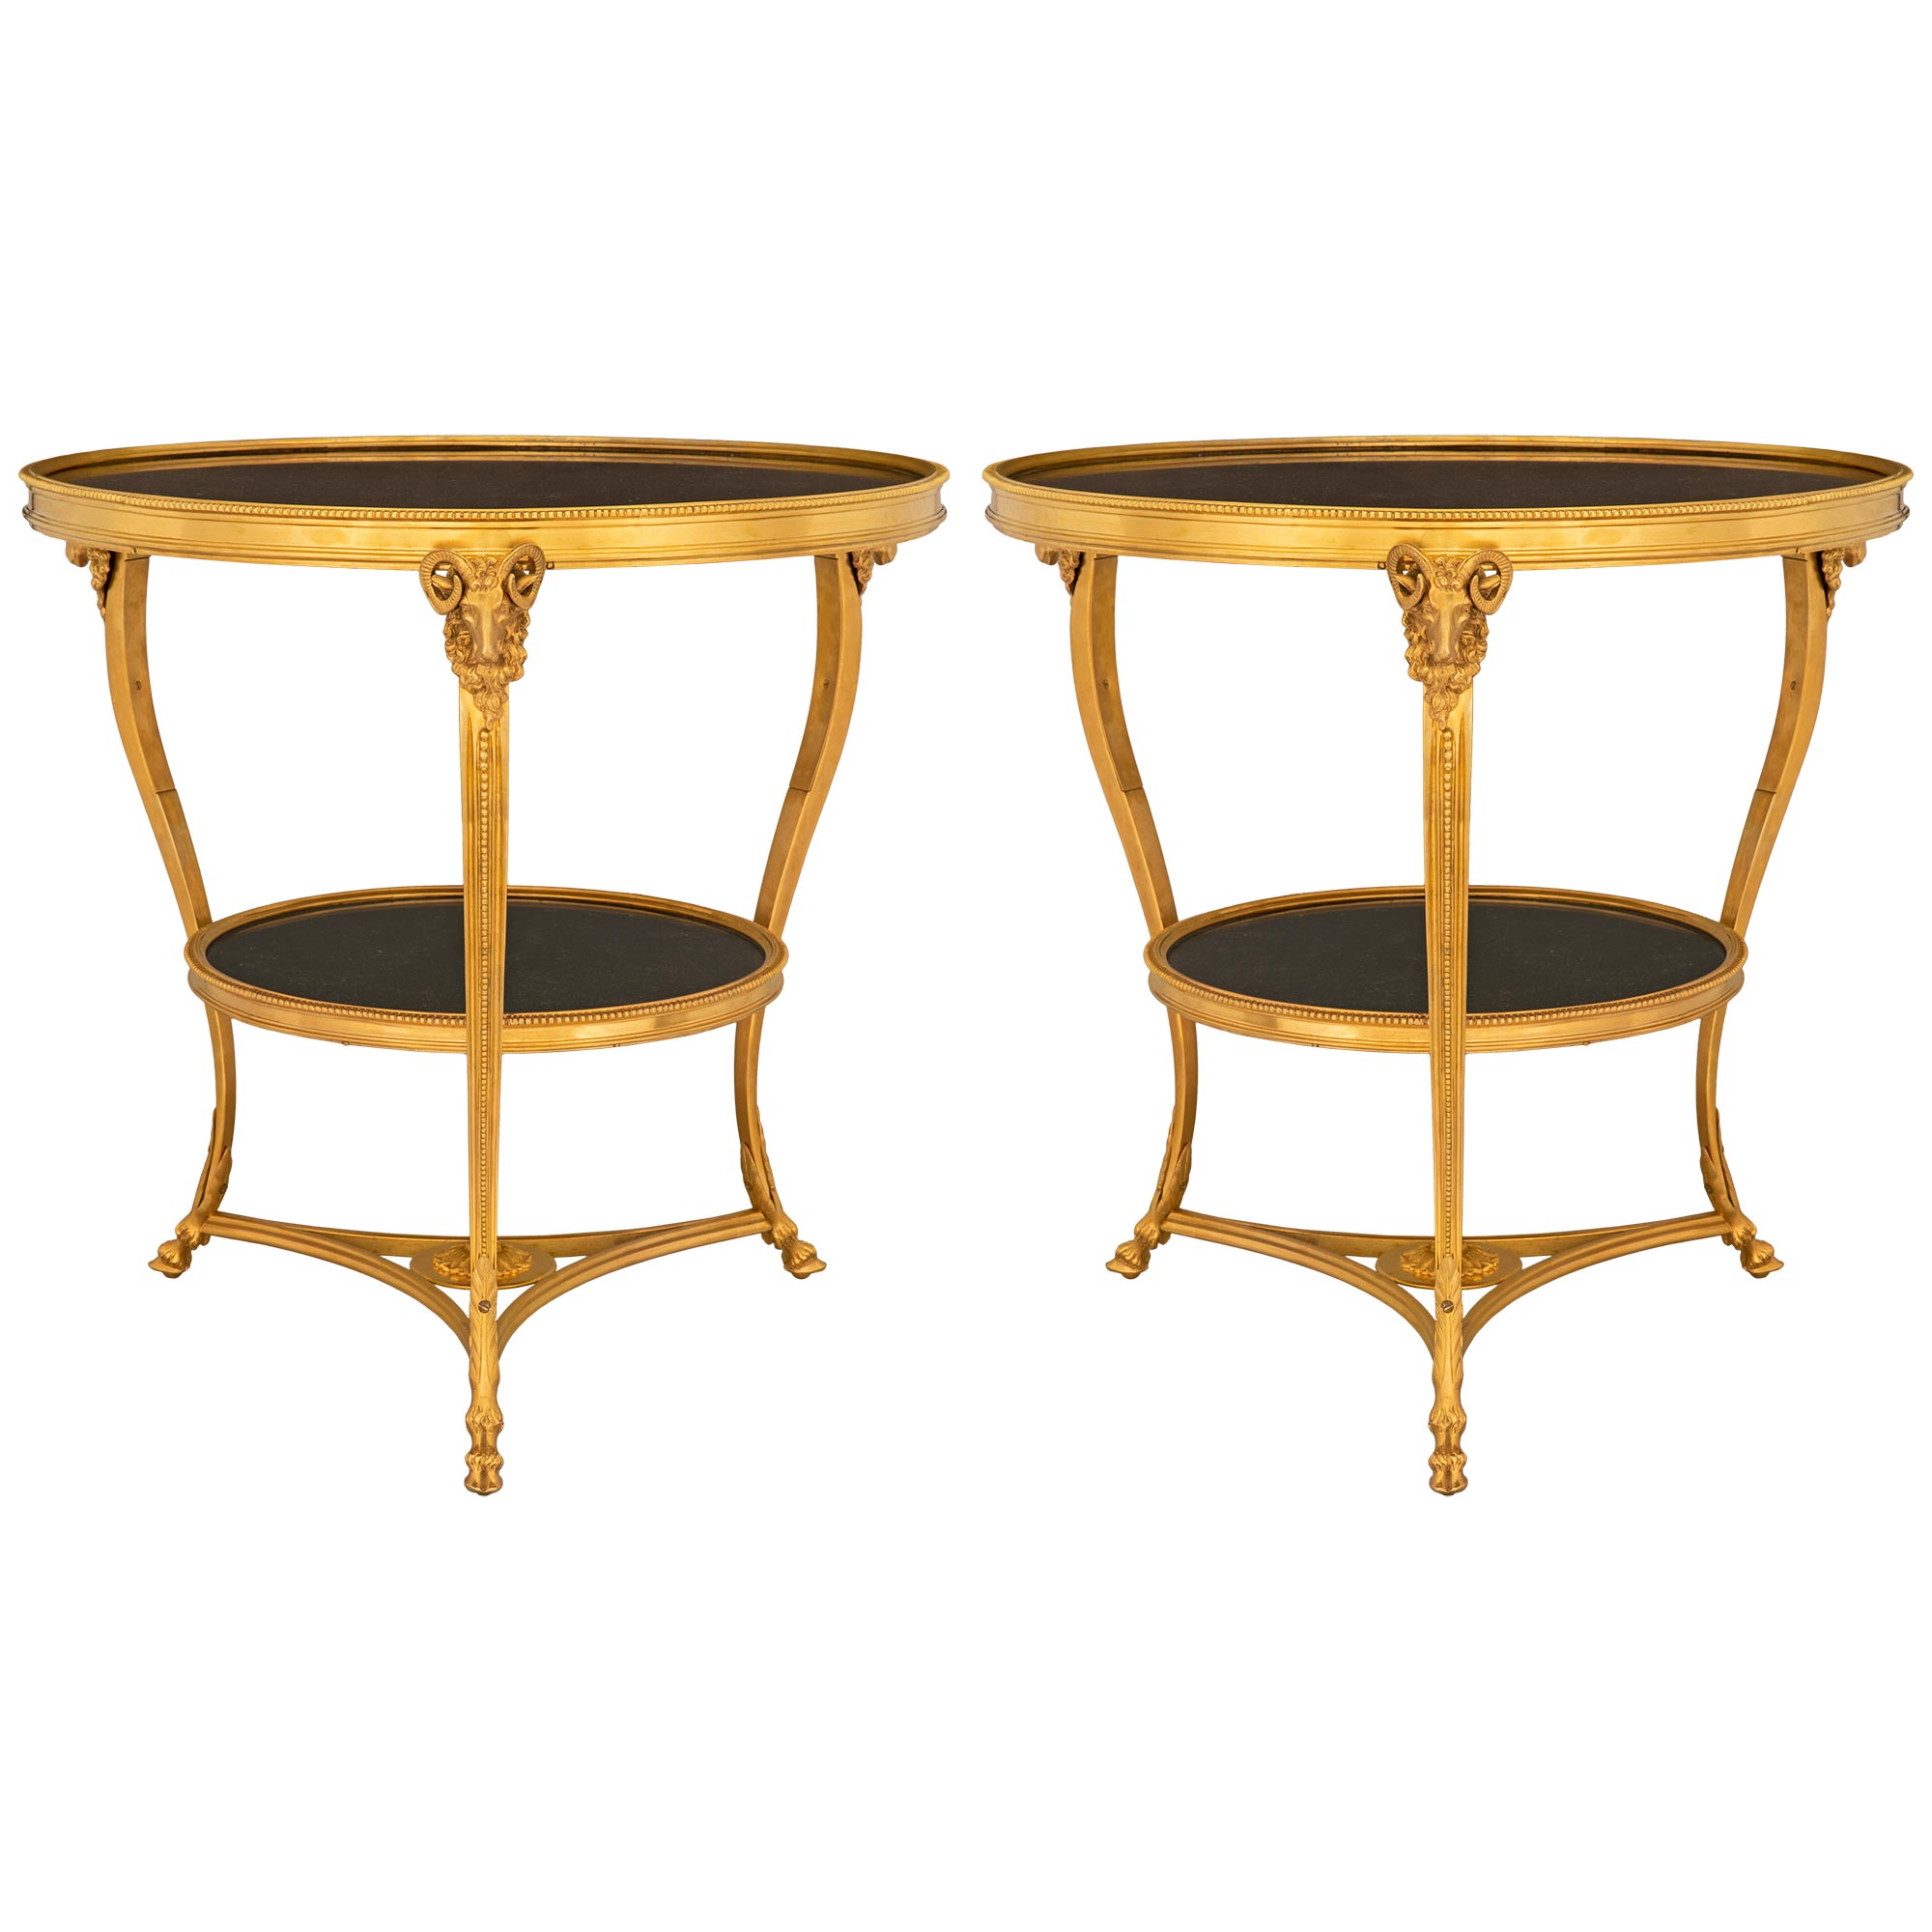 Paire de tables d'appoint Guéridon en marbre et bronze doré, de style Louis XVI, du XIXe siècle